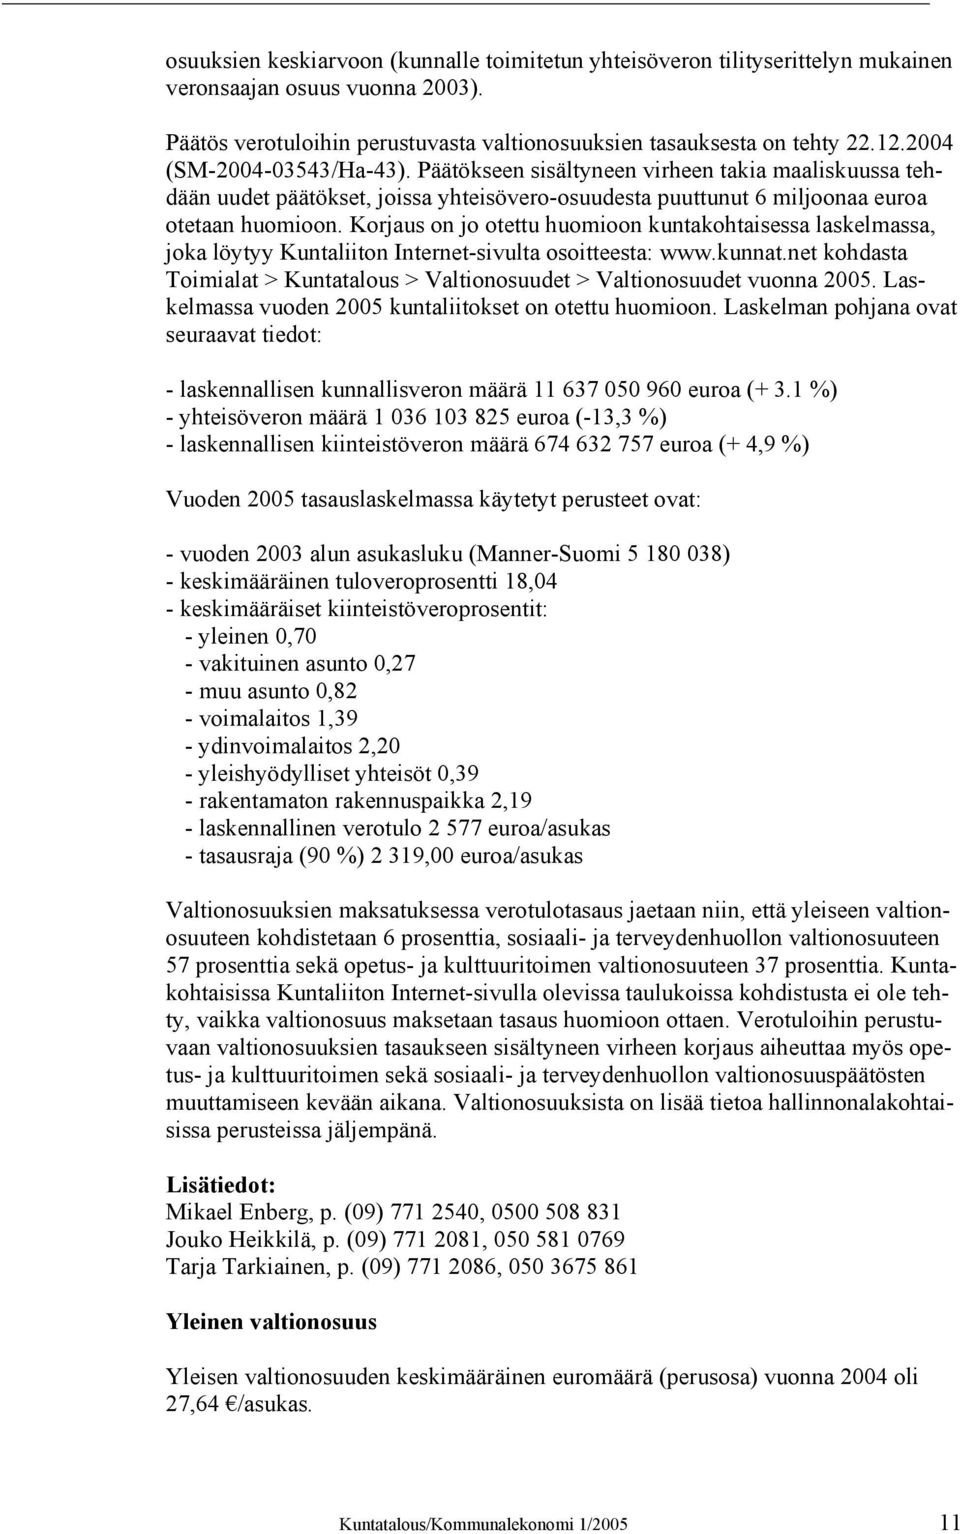 Korjaus on jo otettu huomioon kuntakohtaisessa laskelmassa, joka löytyy Kuntaliiton Internet-sivulta osoitteesta: www.kunnat.